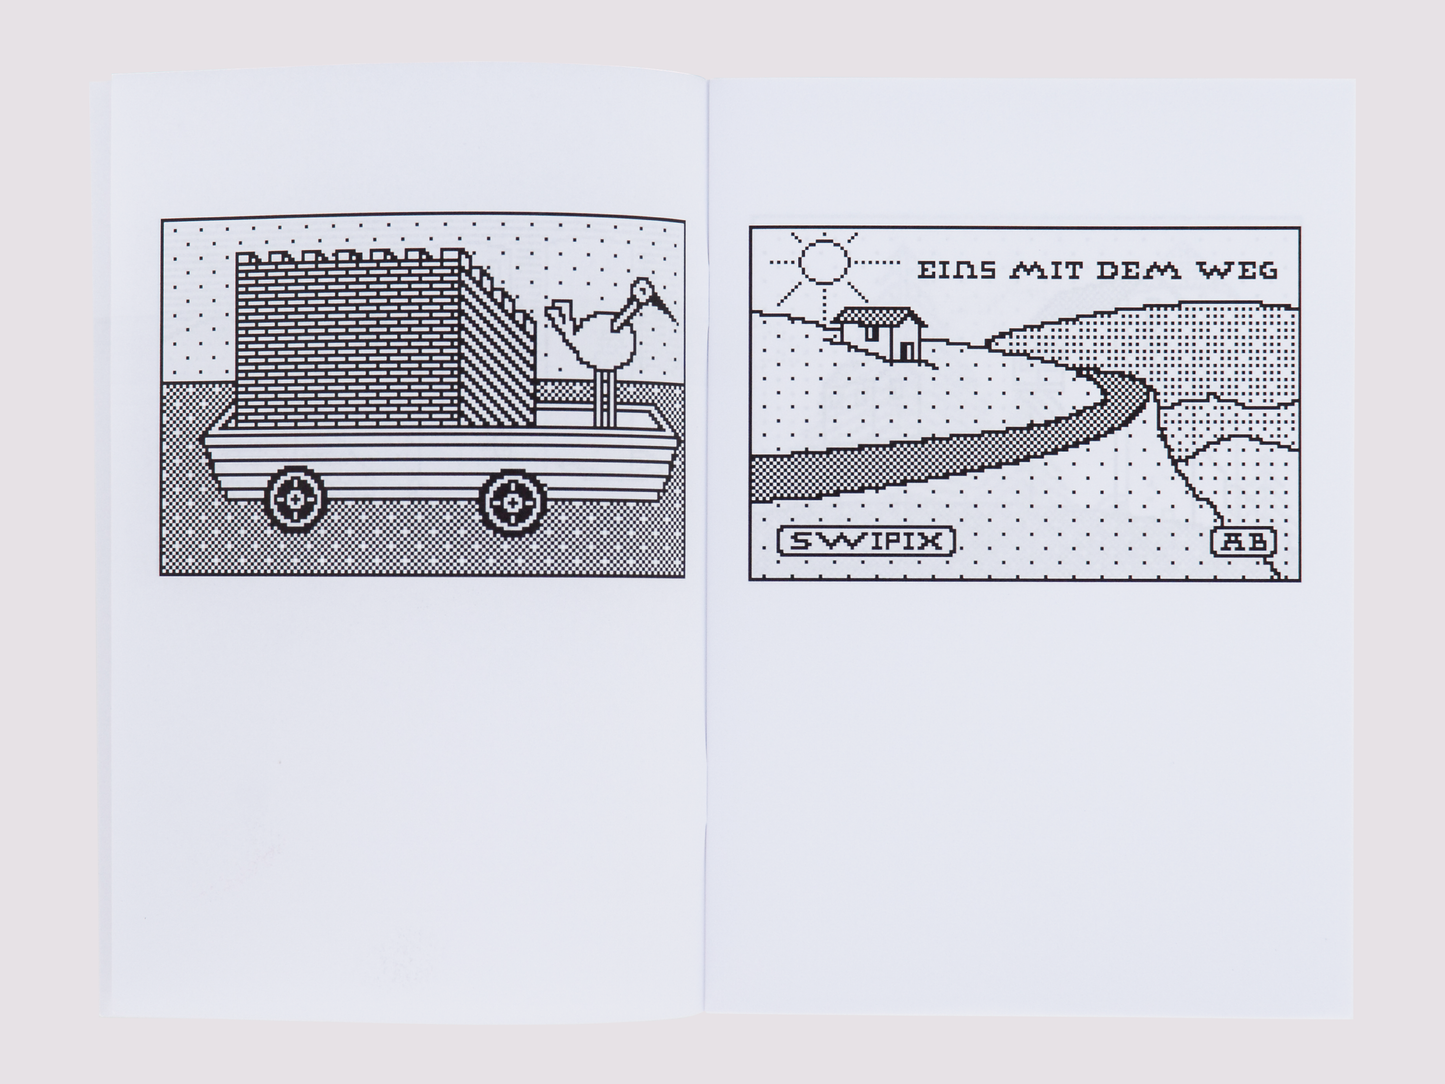 Pixelbildli Mit Hausean/Anton Bauhin published by Innen